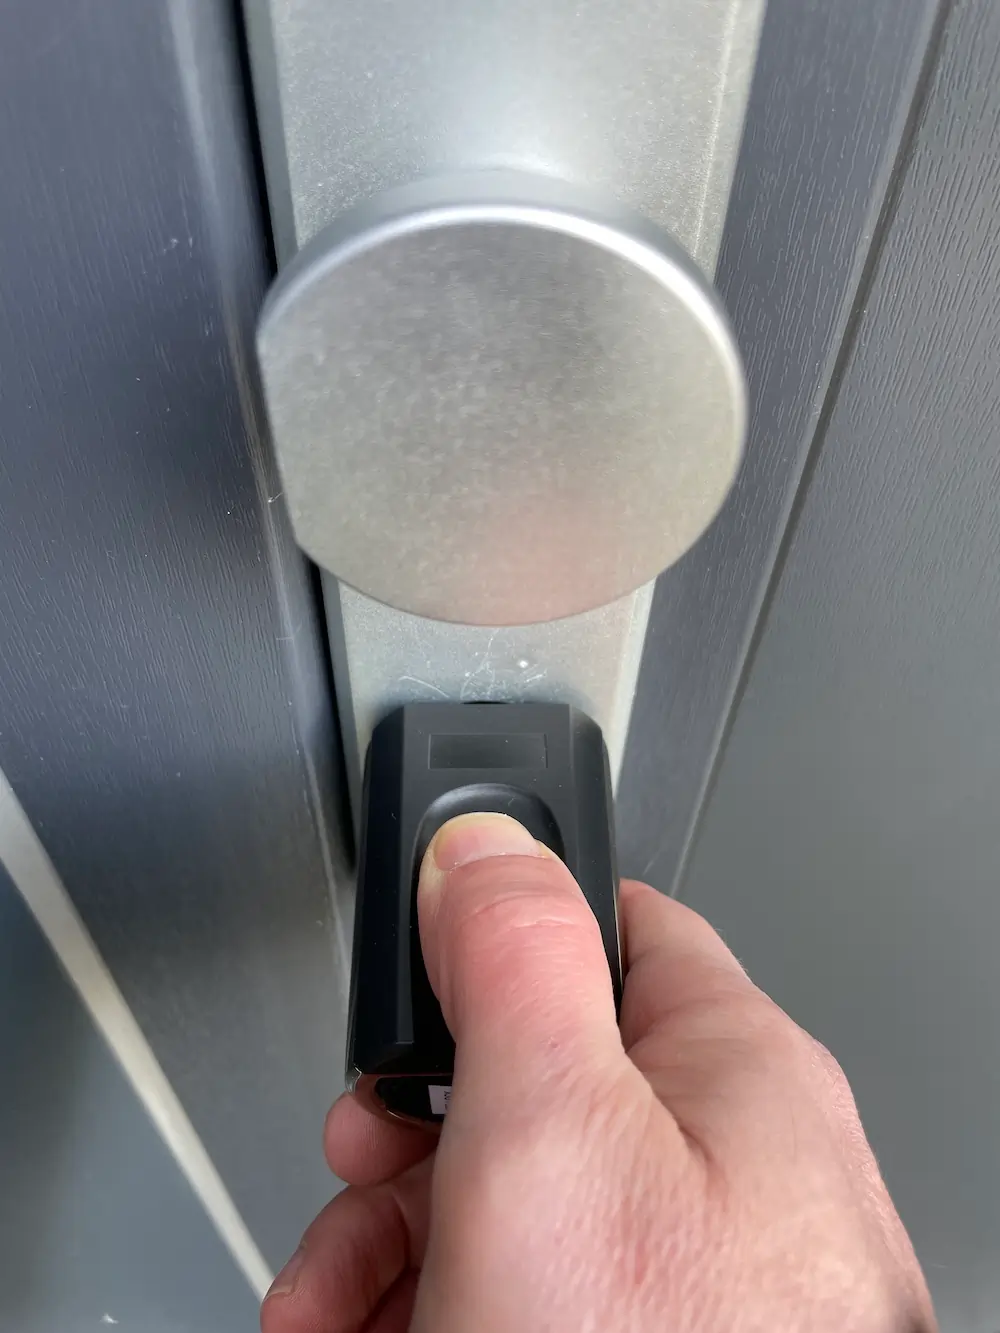 Welock Smart Lock Touch41 mini - öffnen per Fingerprint in der Praxis erwies sich als zuverlässig